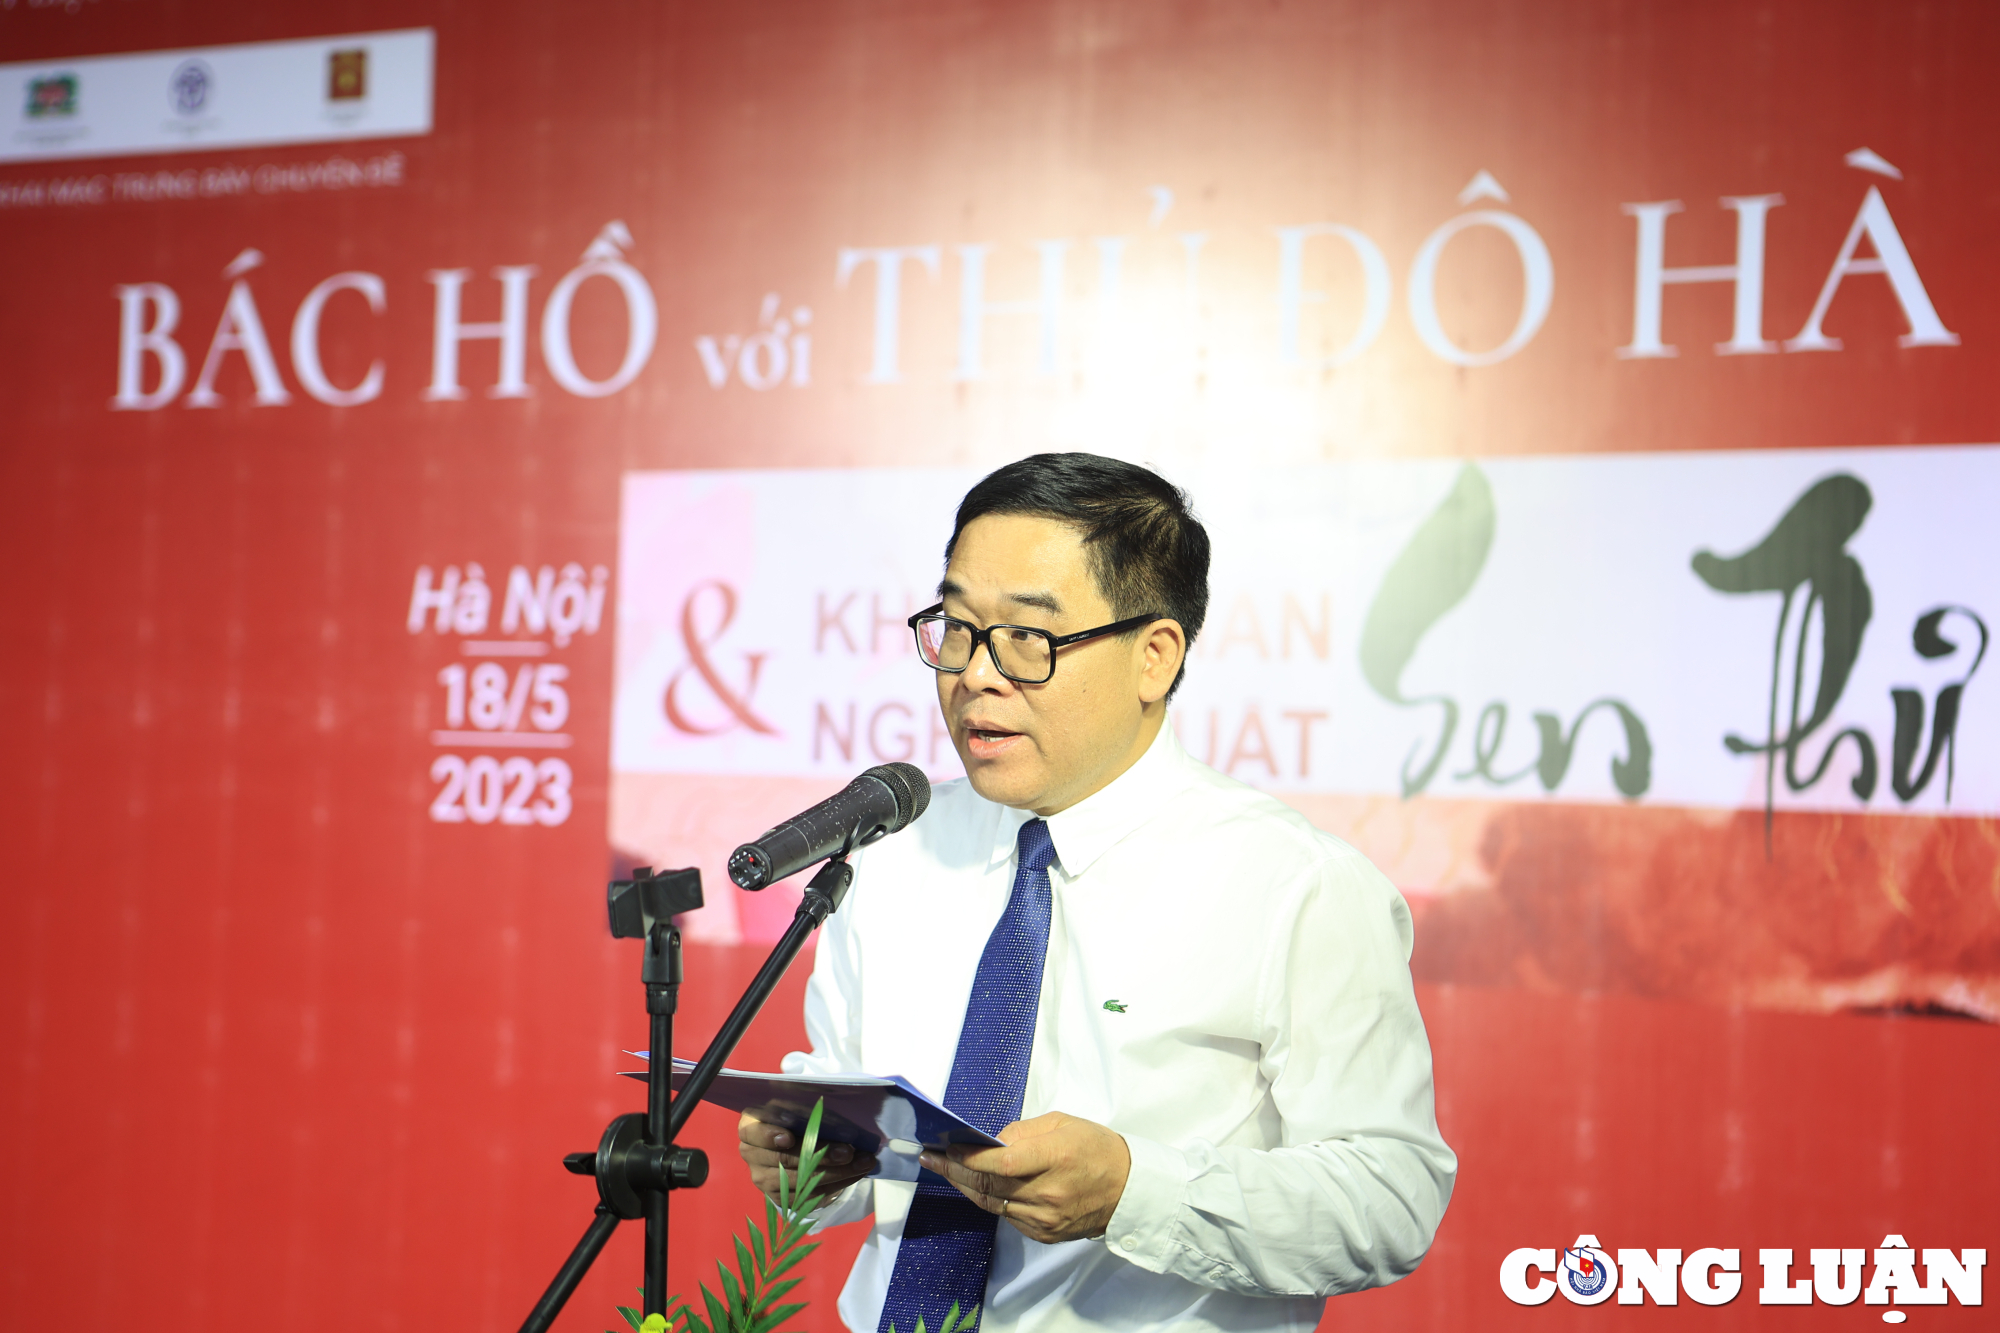 Ông Đỗ Đình Hồng - Giám đốc Sở Văn hóa và Thể thao Hà Nội phát biểu khai mạc trưng bày chuyên đề "Bác Hồ với Thủ đô Hà Nội” và Không gian nghệ thuật "Sen thư pháp".